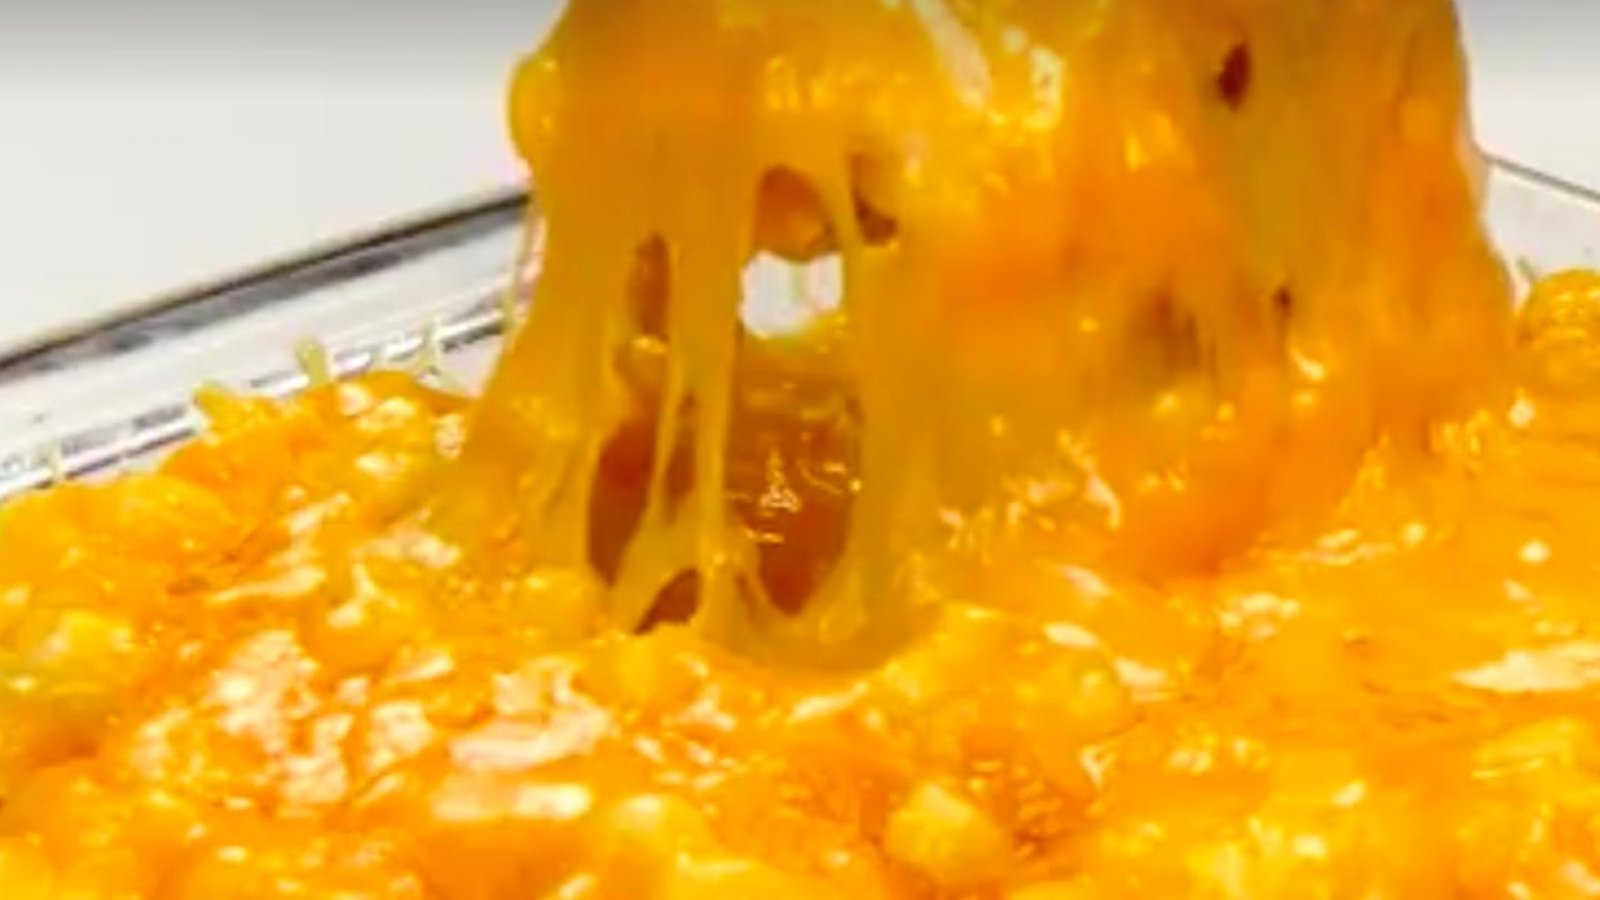 Mettez du pep dans vos soupers avec cette casserole de maïs crémeuse au fromage!